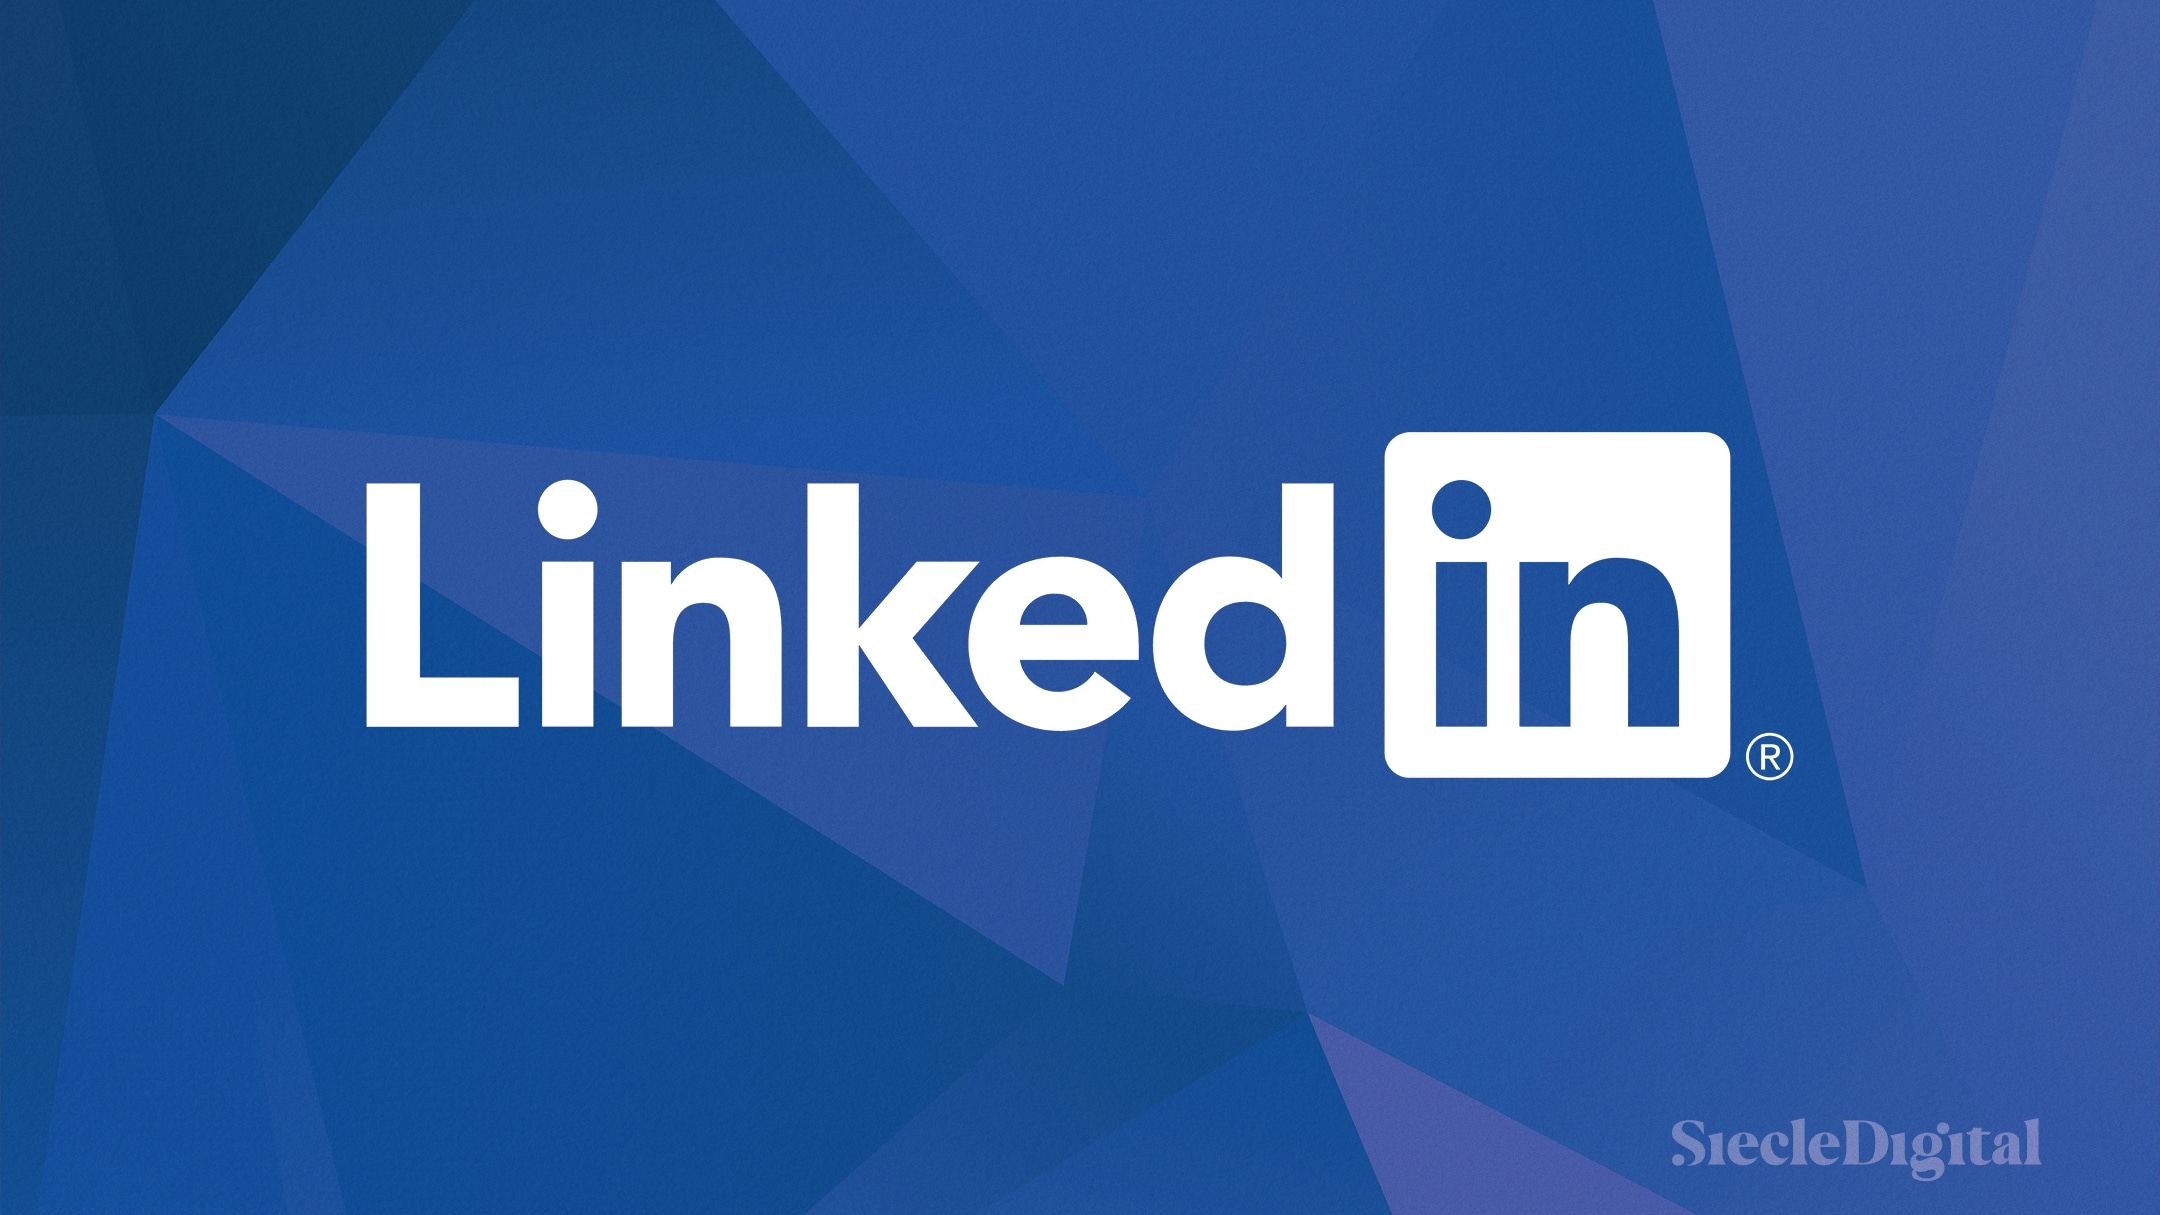 Les stories ne seront plus disponibles sur le réseau social LinkedIn le 30 septembre.